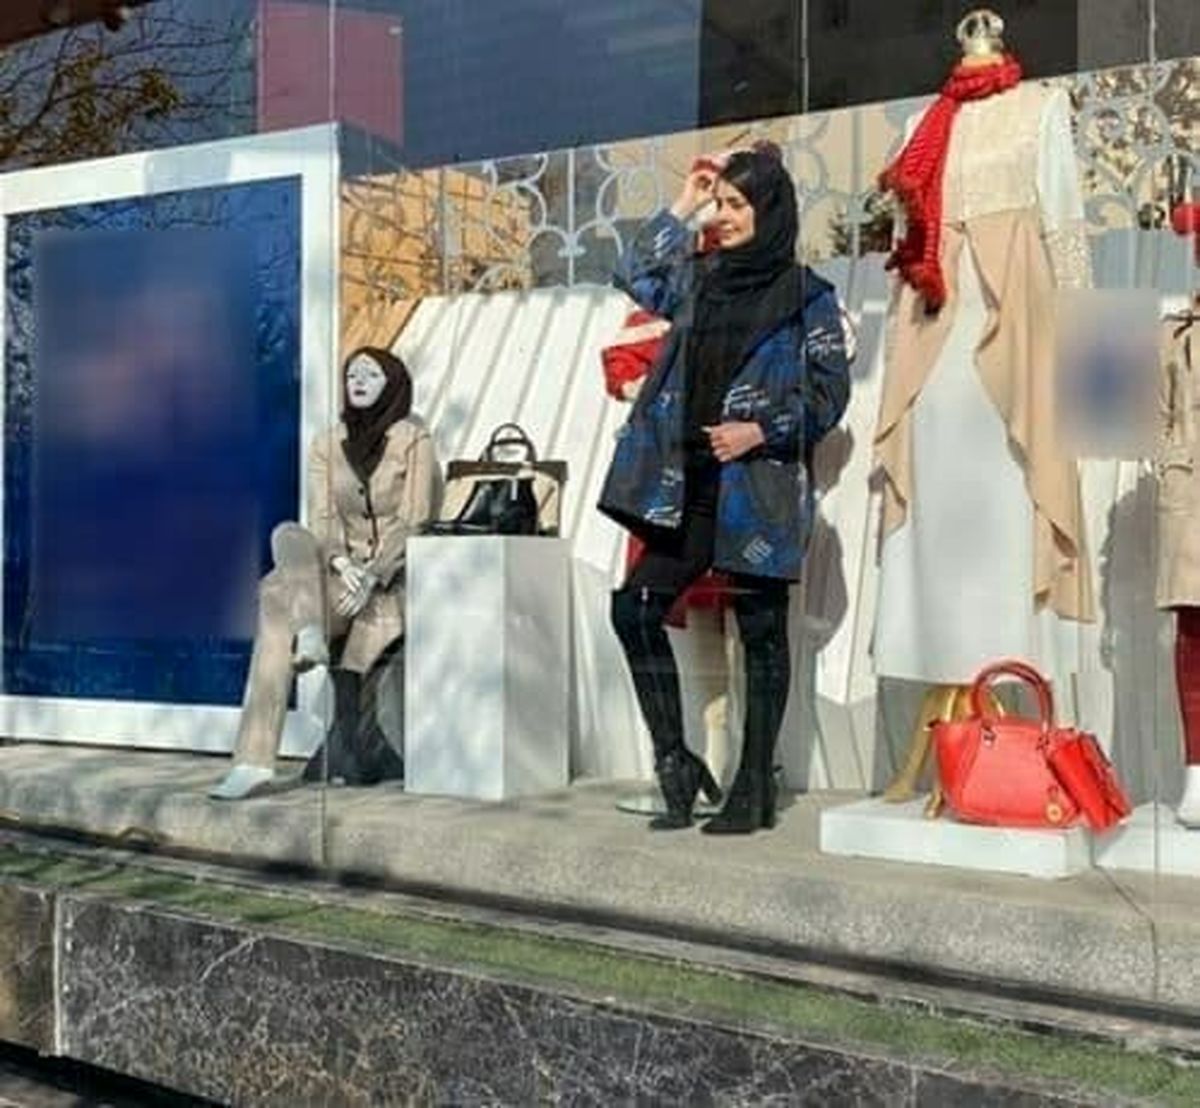 دختر مانکن در ویترین یک مغازه در مشهد غوغا به پاکرد + عکس